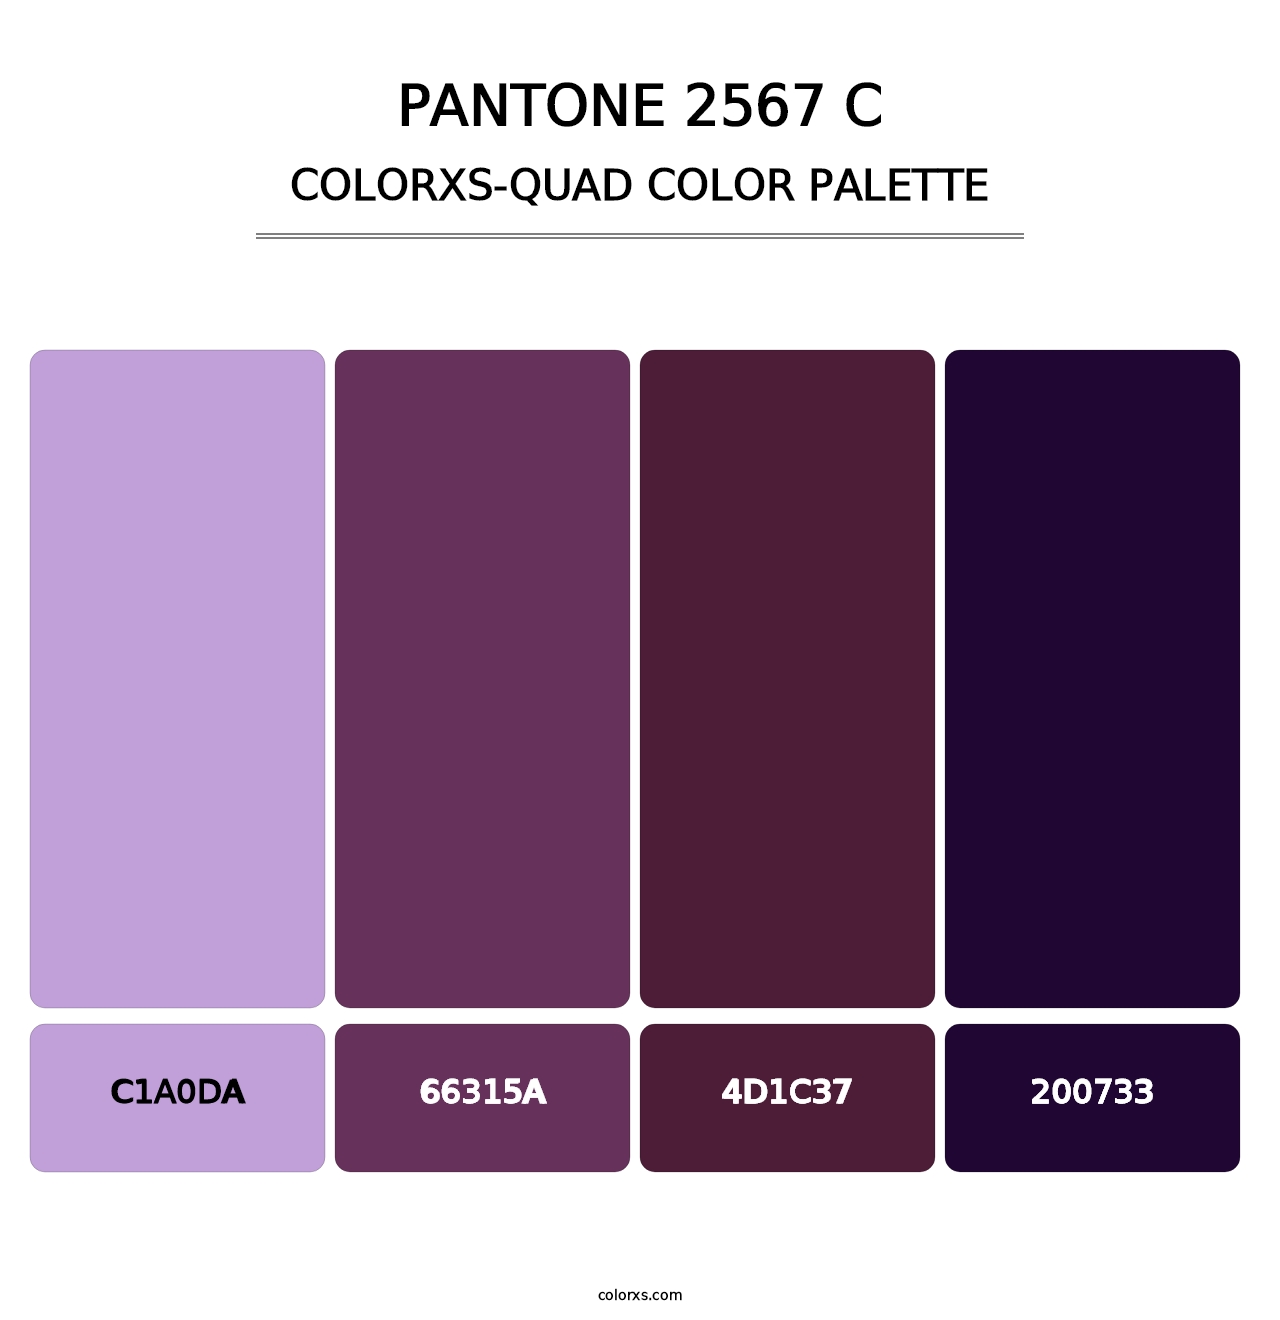 PANTONE 2567 C - Colorxs Quad Palette